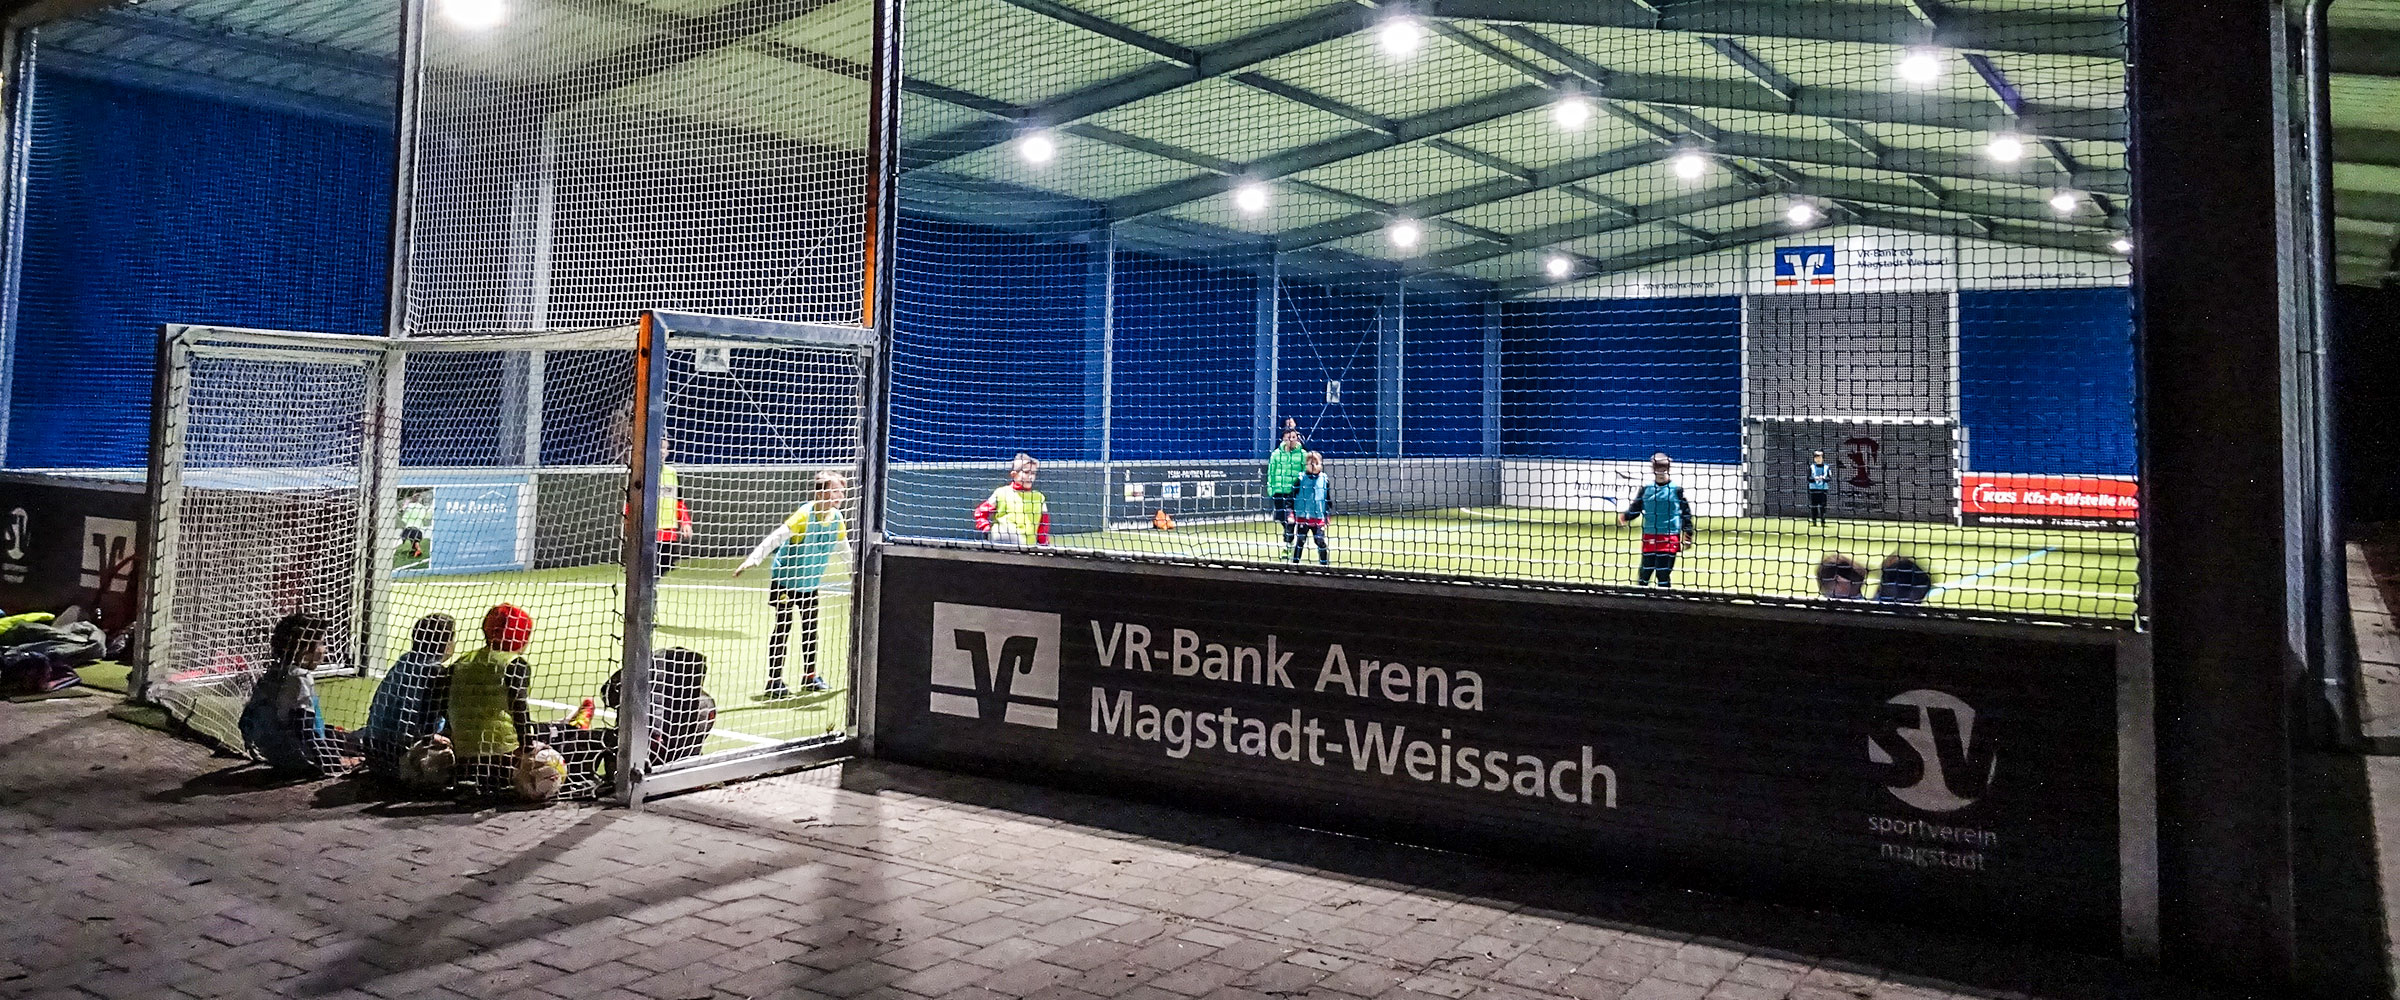 Die McArena Soccerhalle ist für Kinder in Magstadt ein echtes Highlight. Fußball spielen, Spaß haben und trainieren in der McArena Soccerhalle Magstadt.